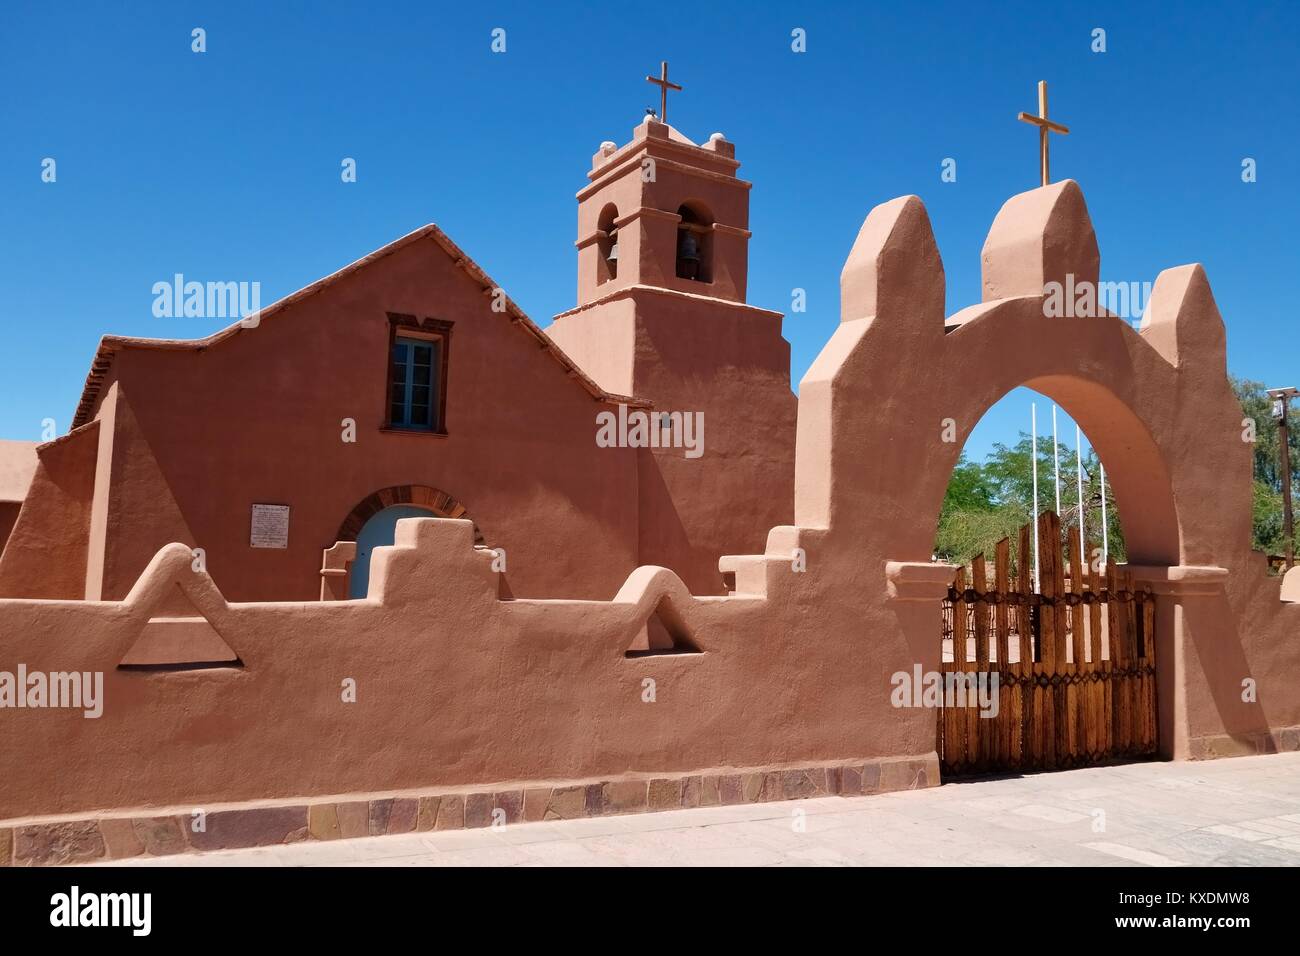 Kirche in Adobe Stil, San Pedro de Atacama, El Loa, Antofagasta, Chile Stockfoto